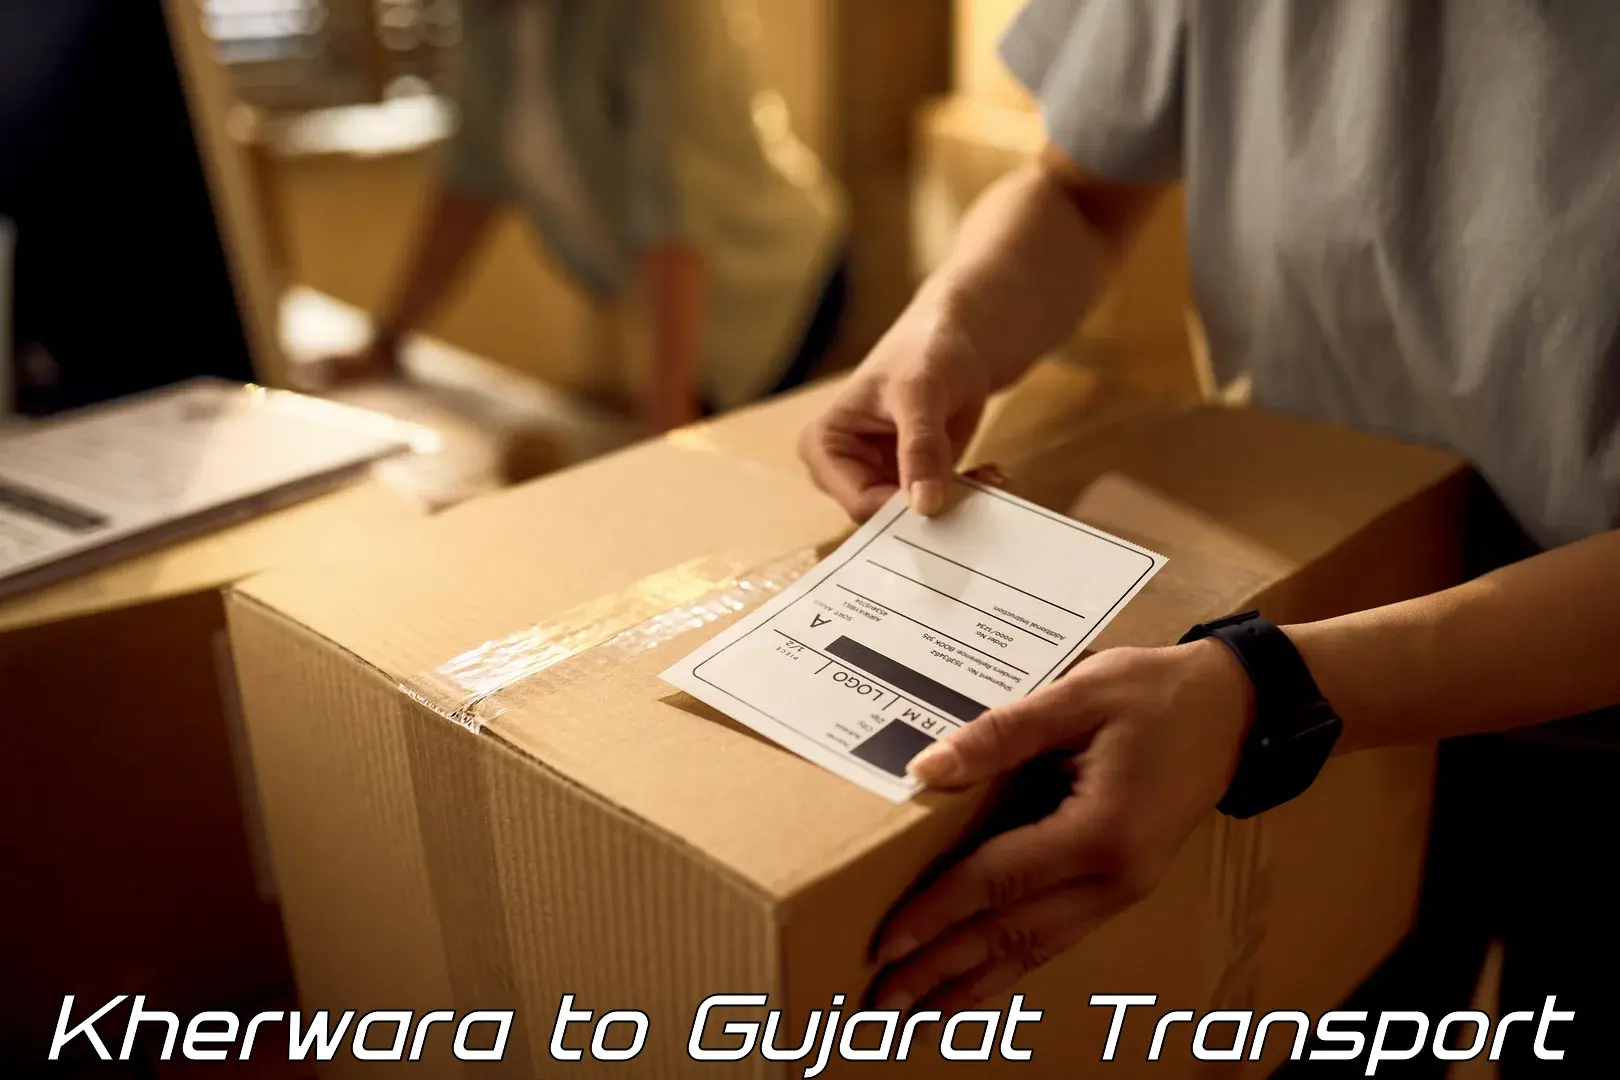 Cargo transport services Kherwara to Vadodara